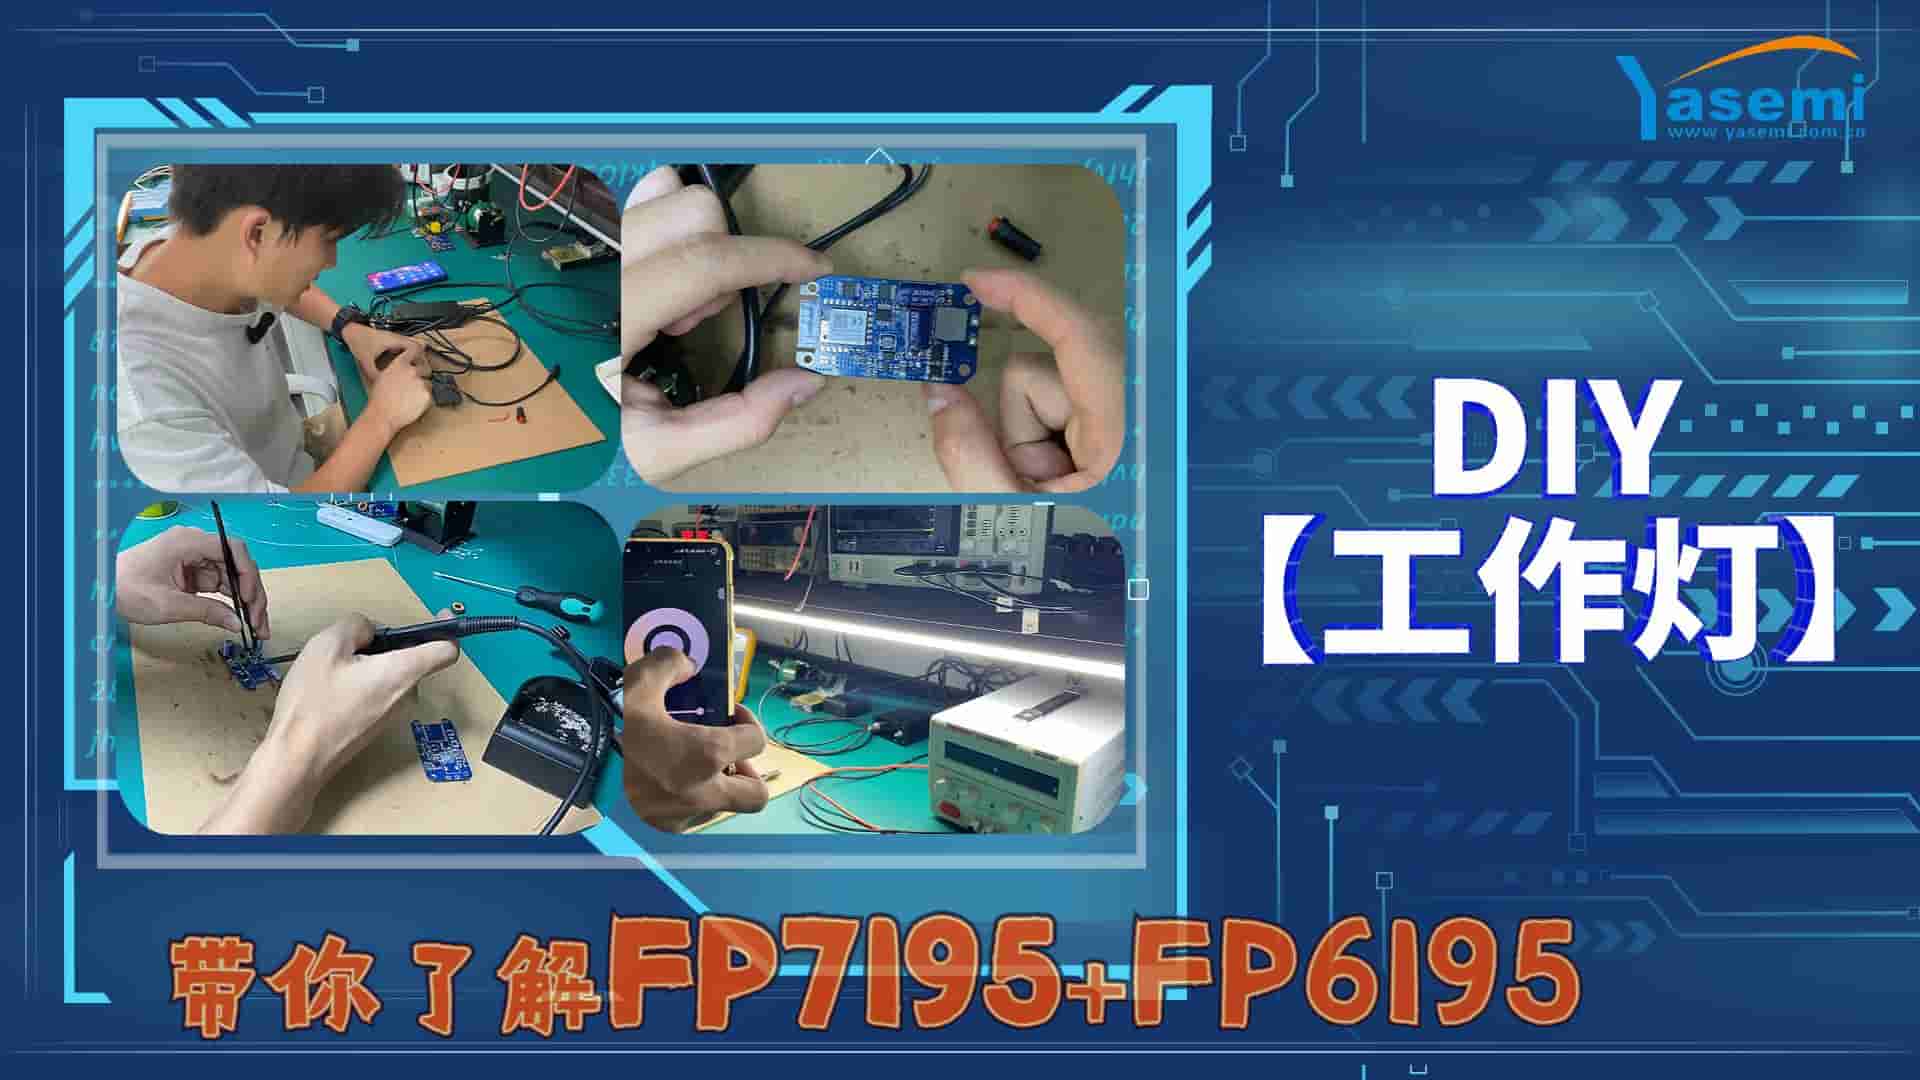 FP7195+FP6195双色转模拟调光应用：DIY【led工作灯】
#led灯 #嵌入式开发 #产品方案 